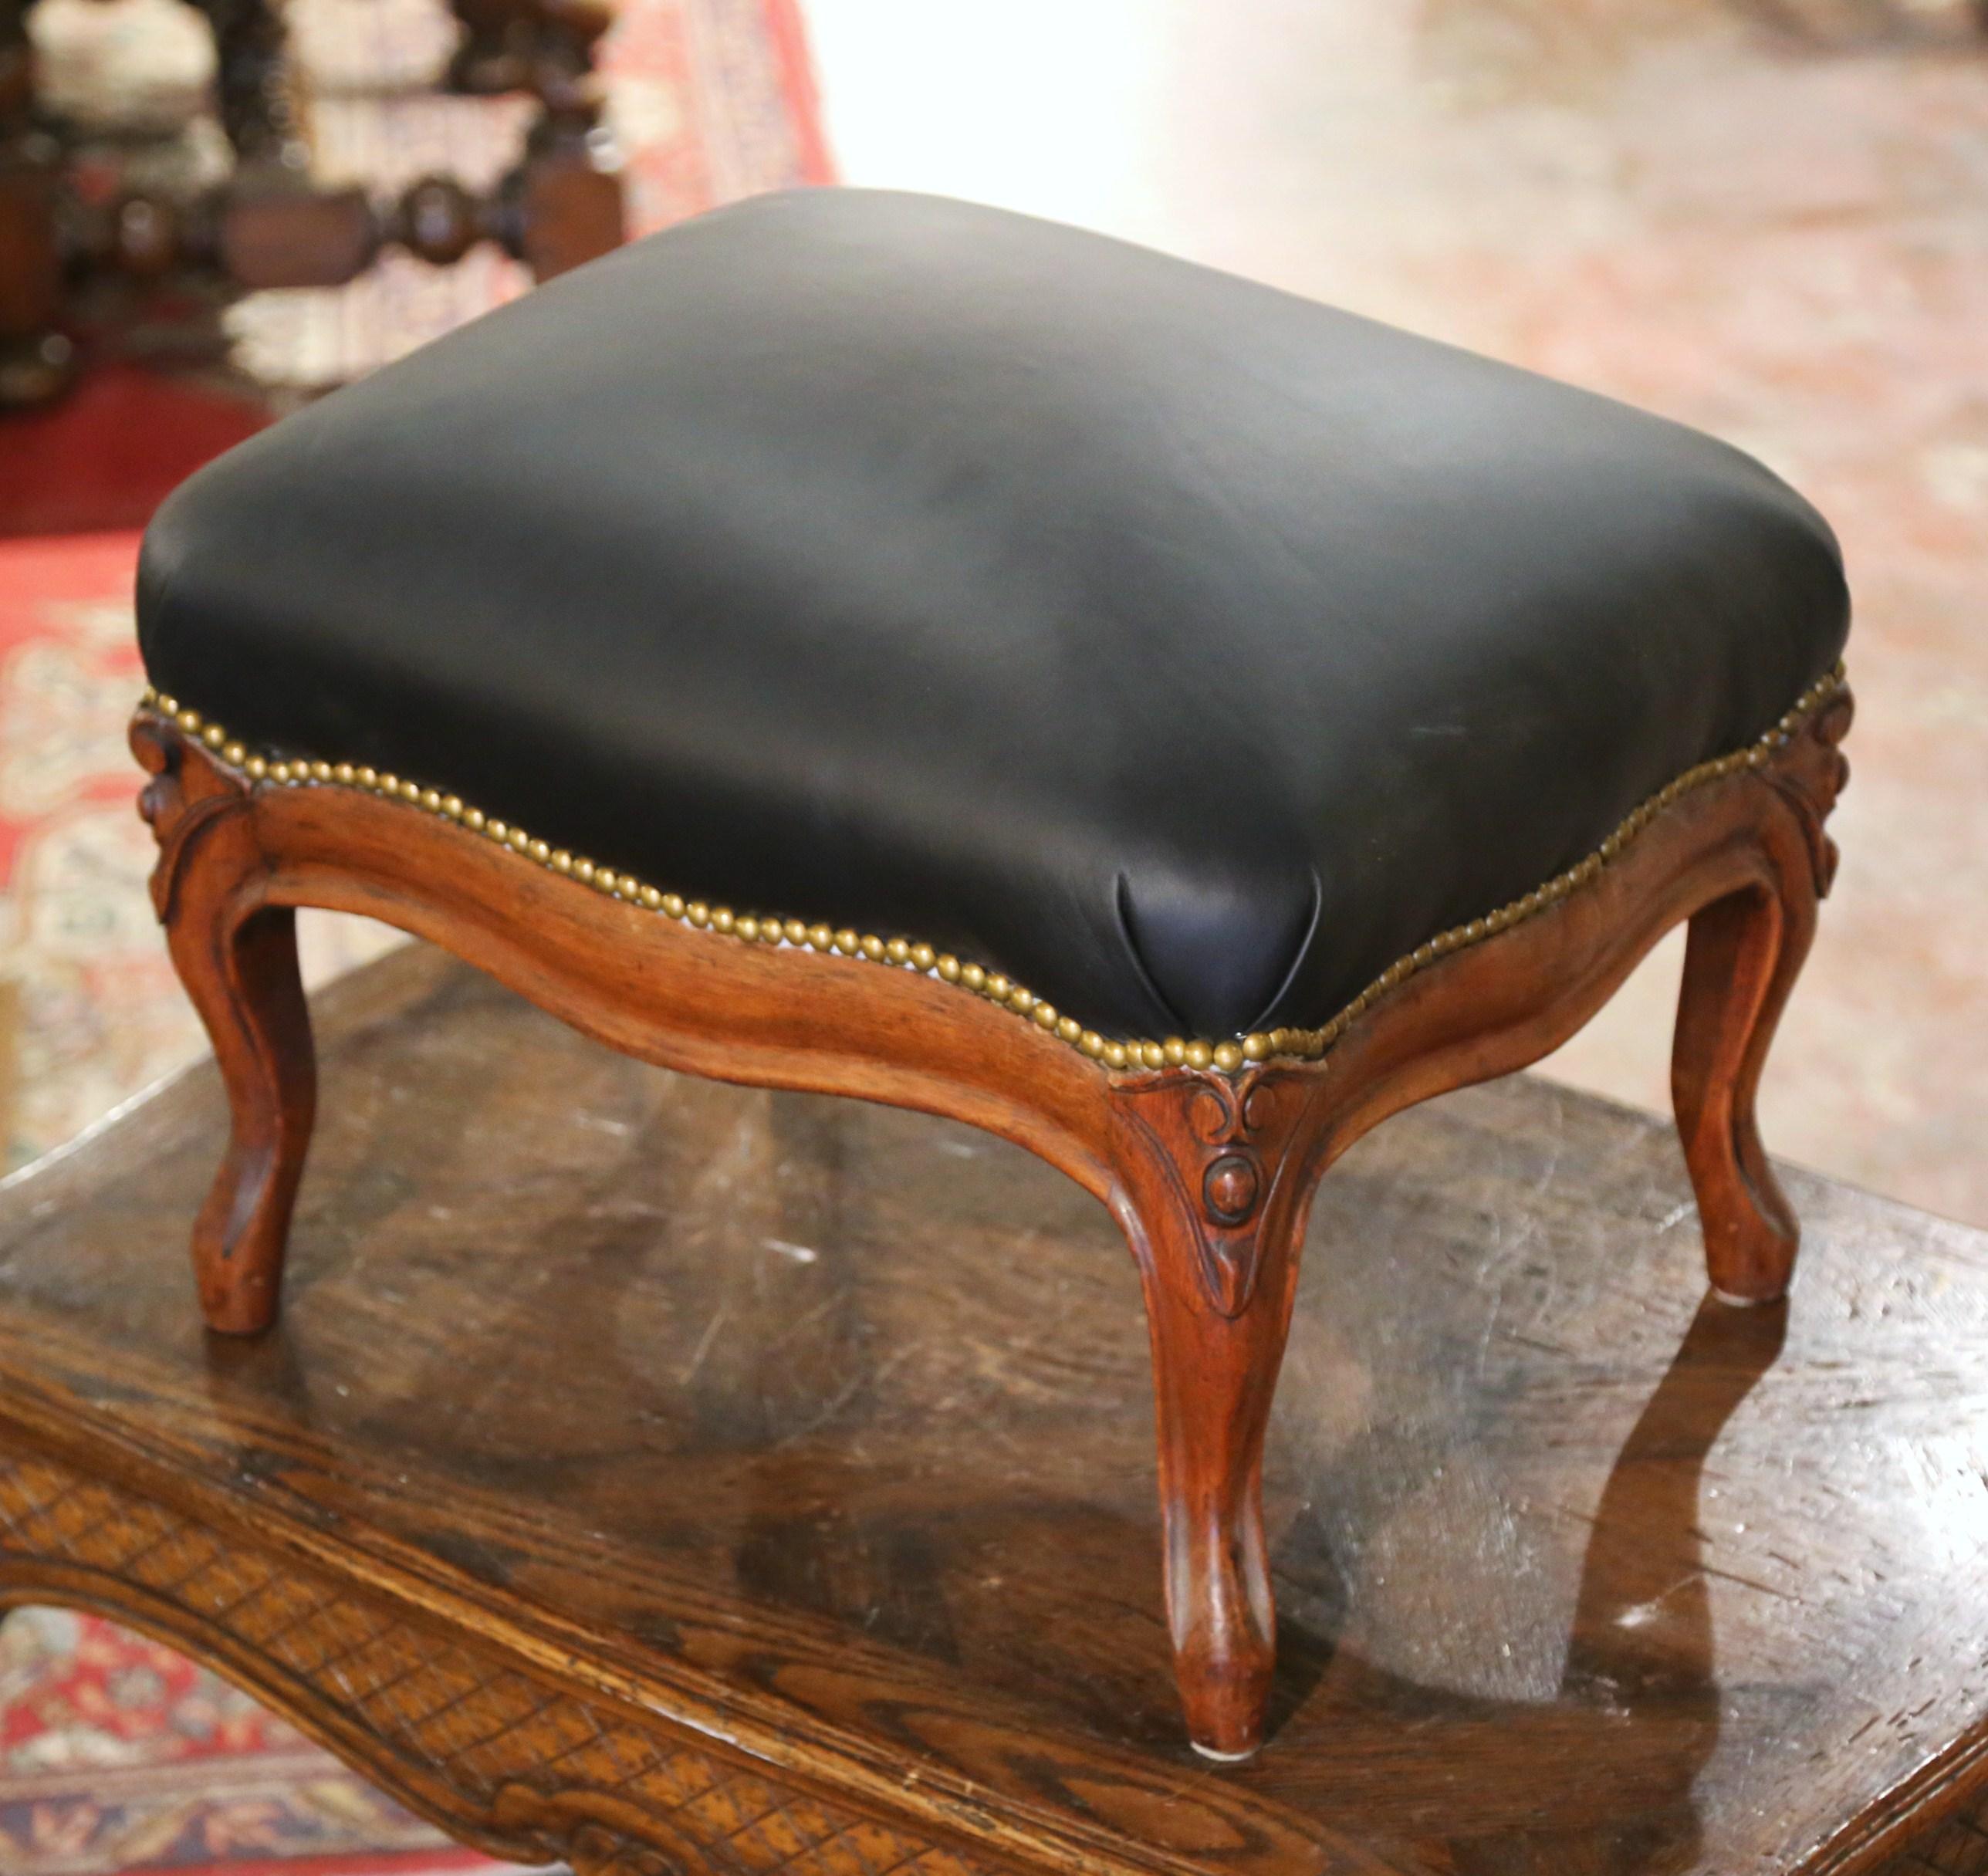 Dieser elegante, antike Louis XV-Hocker wurde um 1920 in Frankreich hergestellt. Der große rechteckige Schemel steht auf vier Cabriole-Beinen, die an den Schultern mit verschnörkelten Motiven verziert sind, und einer Schürze mit Wellenschliff. Der